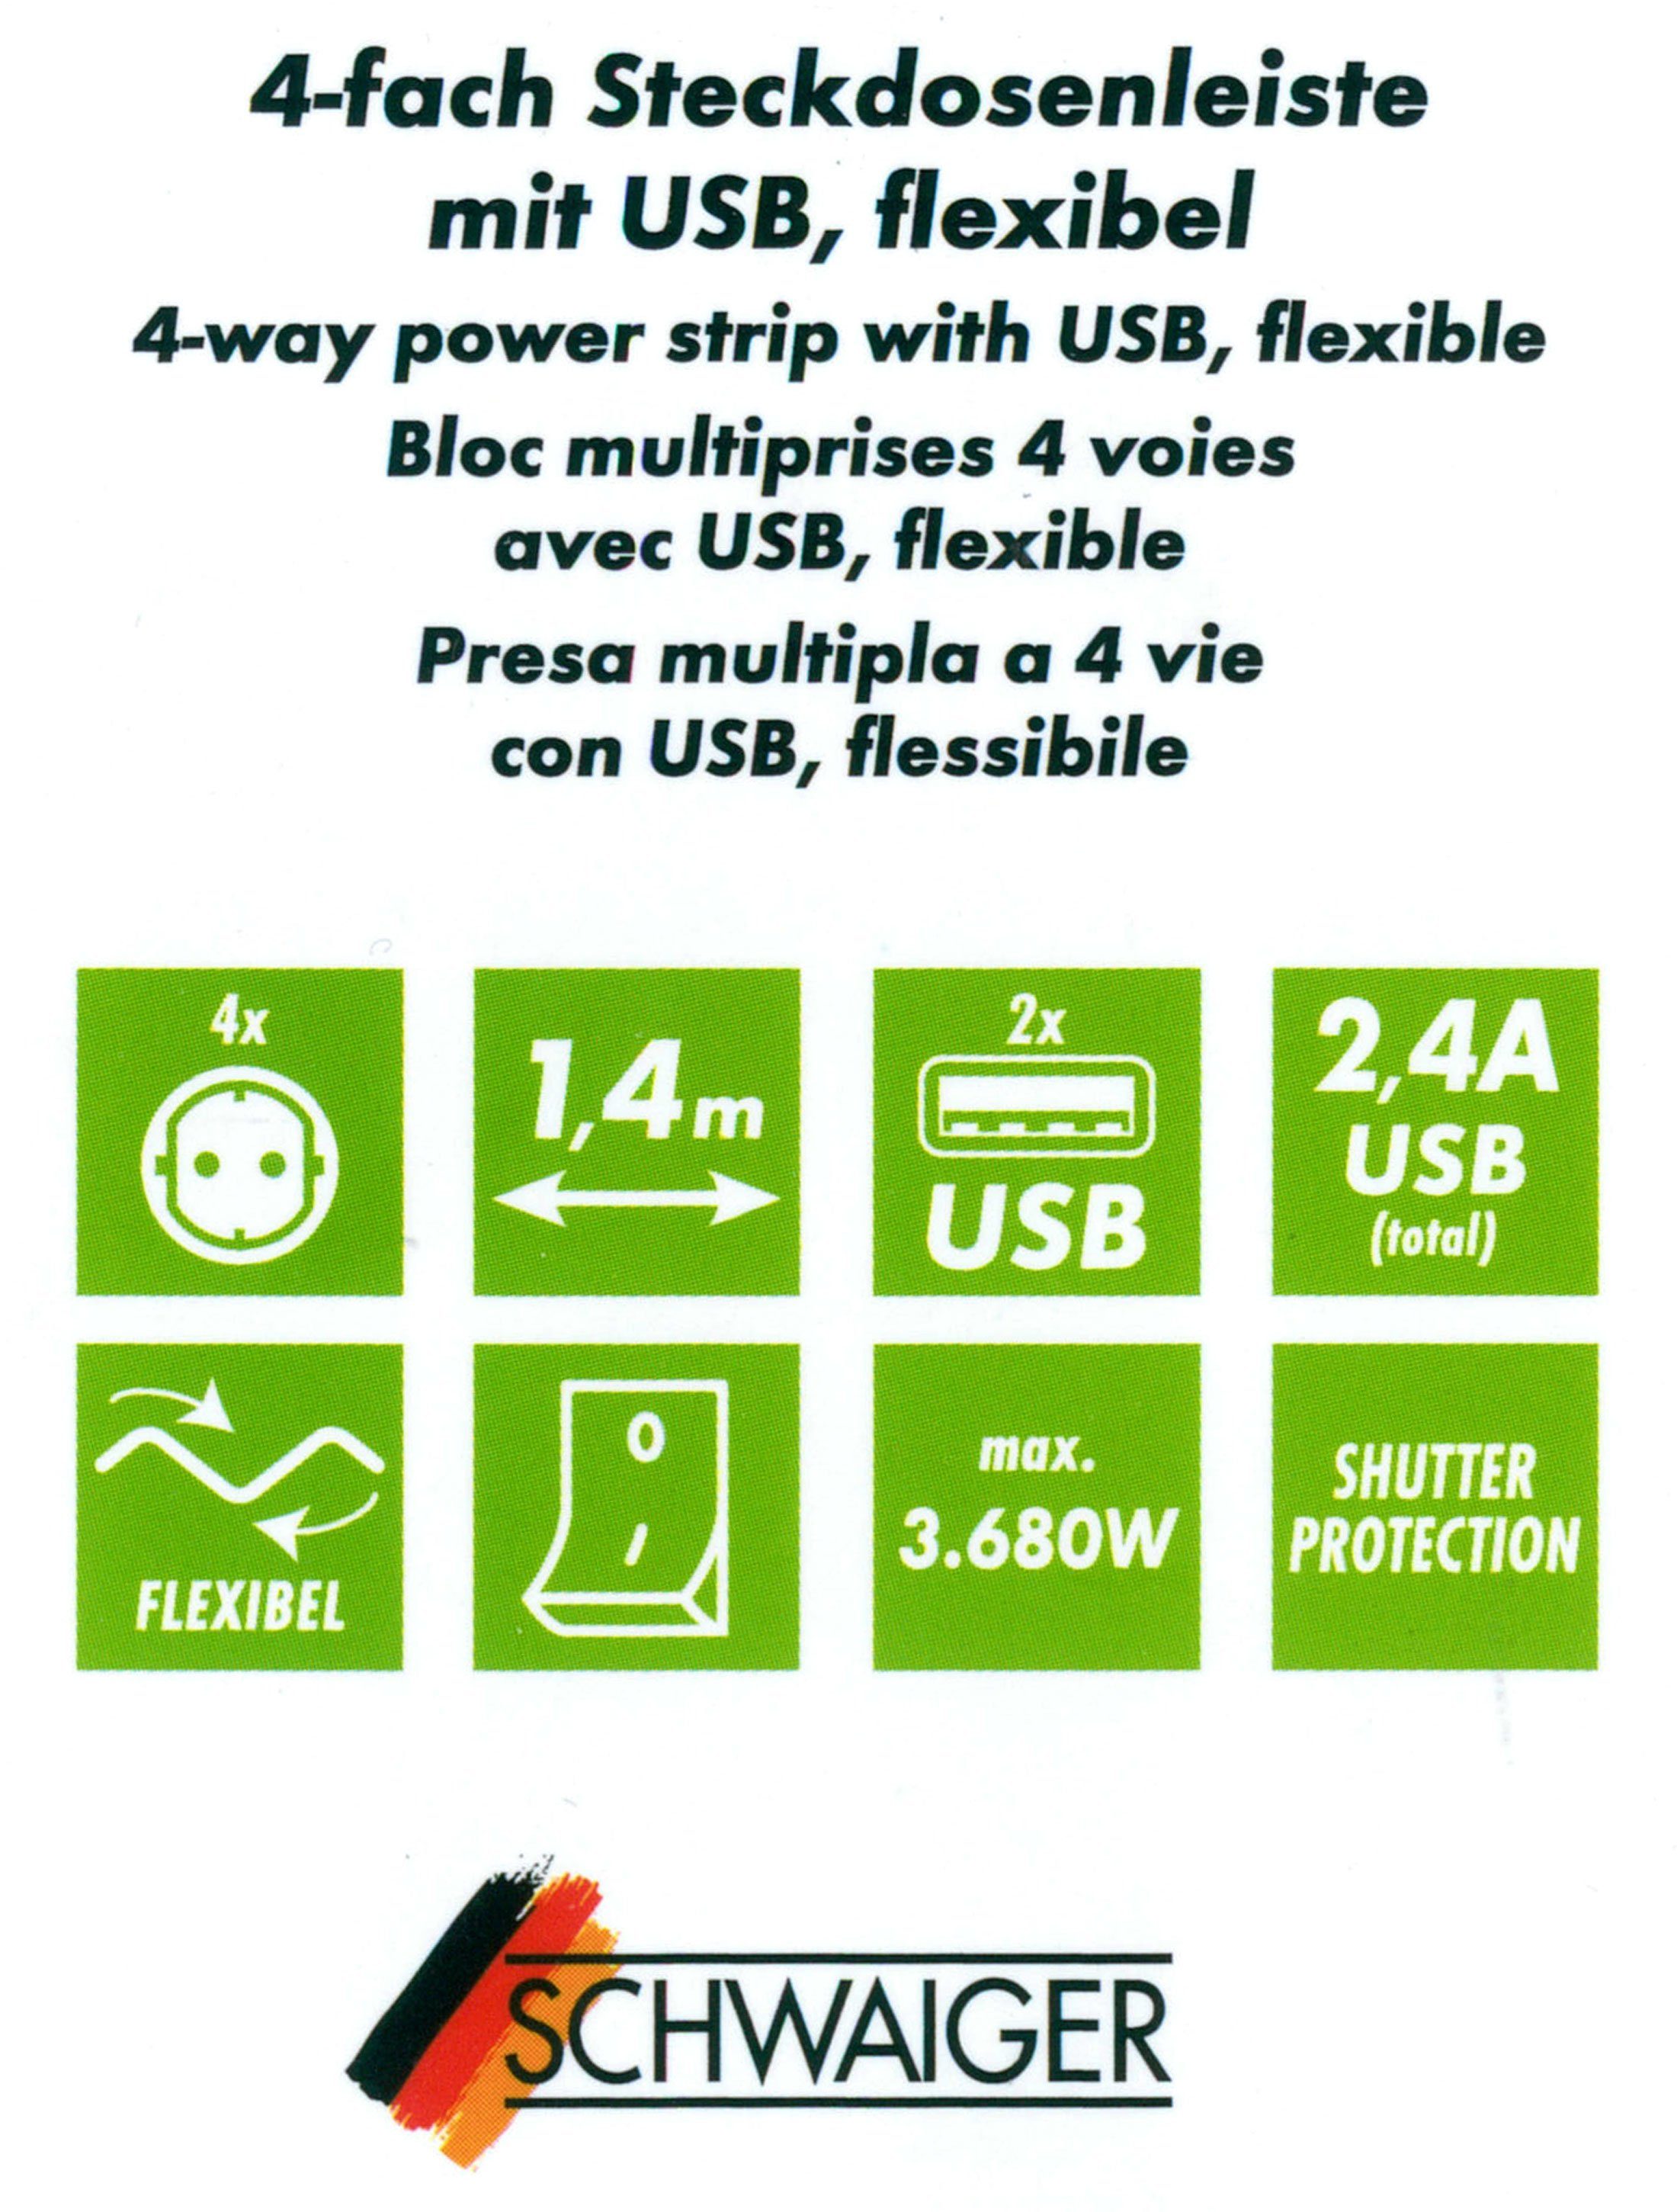 / Ausschalter, Mehrfachsteckdose schwarz Schalter / (4,2A) Flexible x 1,5M USB-Anschlüsse, 12w 2 Schalterbeleuchtung, Ein- x 2 separate 4-fach Ausschalter, inkl. USB (Ein- Schwaiger USB kabel), Einsatz, Steckdosenleiste Mehrfachstecker